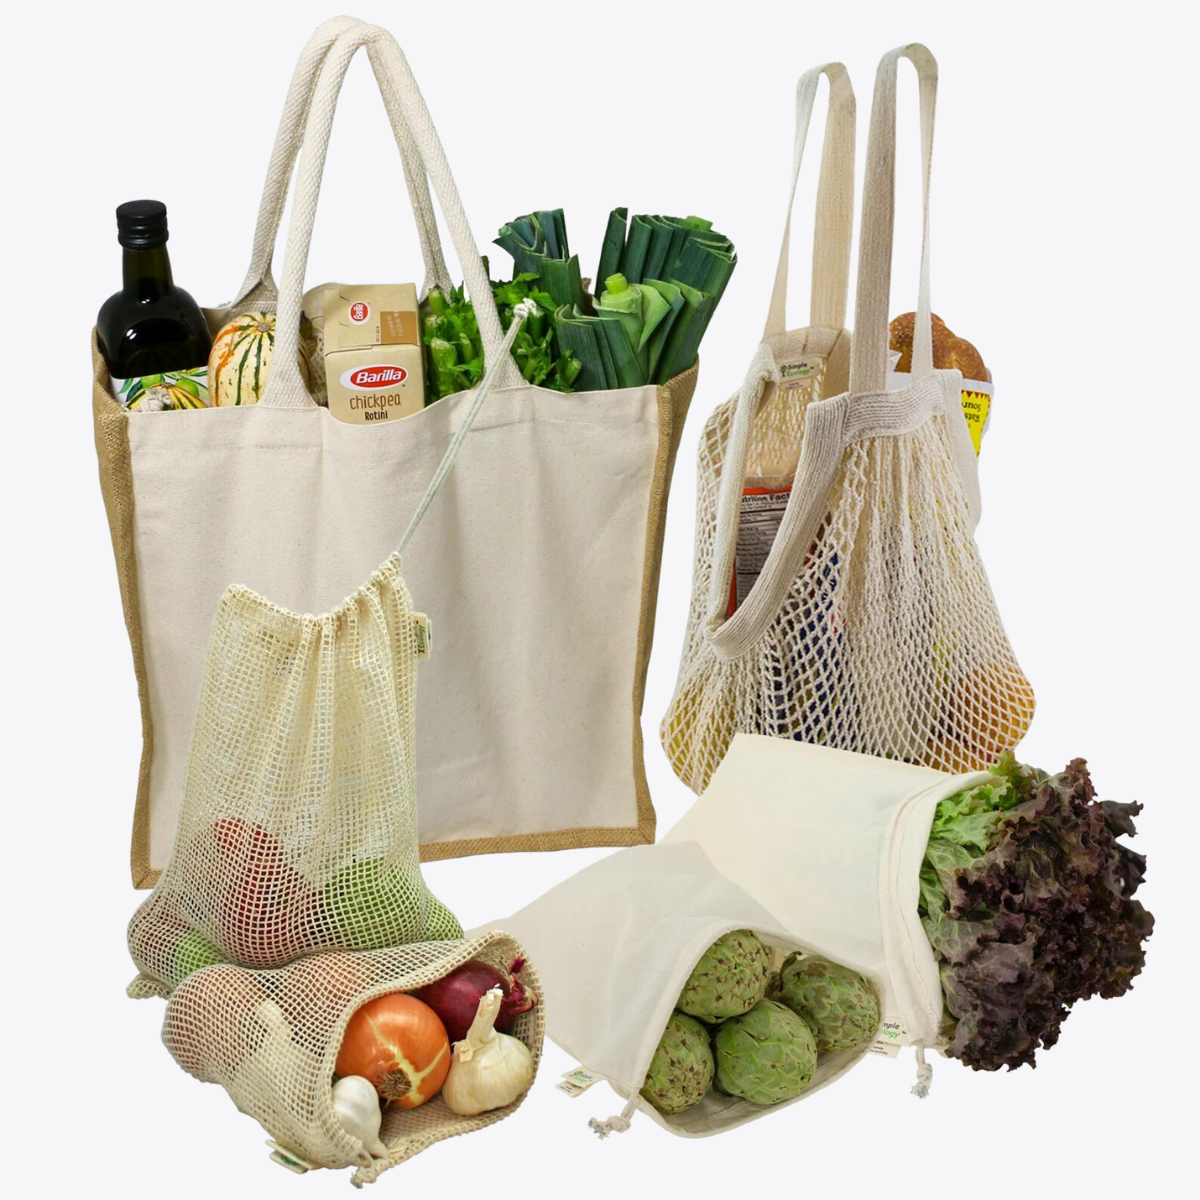 Farmer’s Market Tote & Produce Bag Set